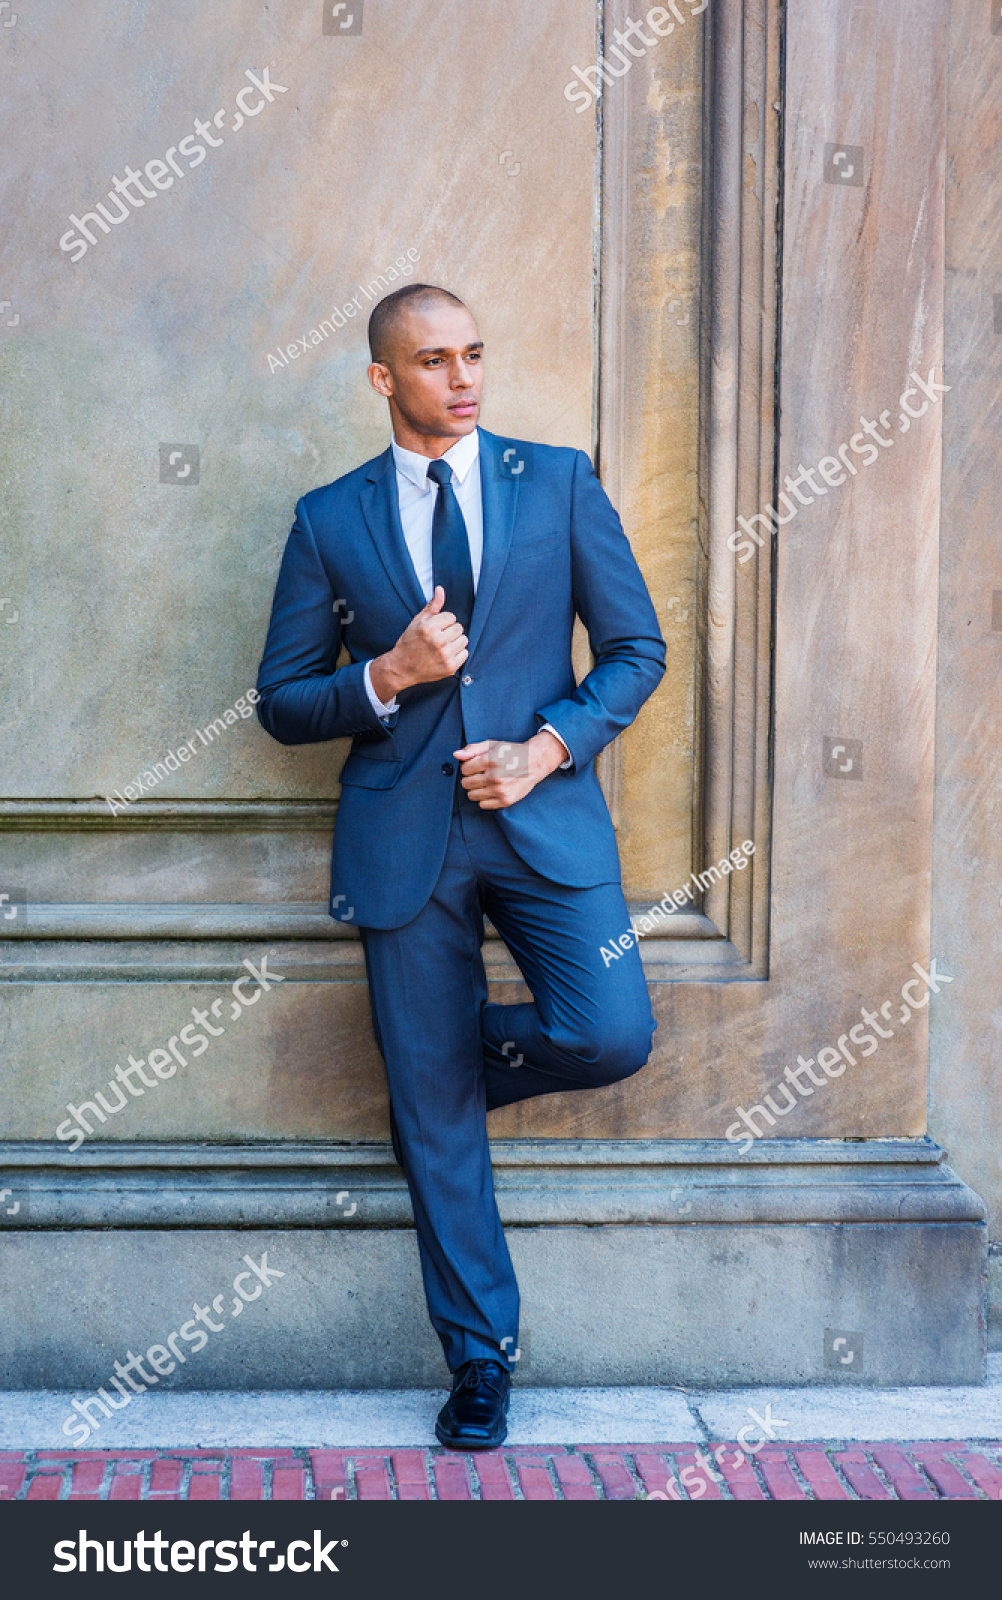 blue suit white shirt black shoes